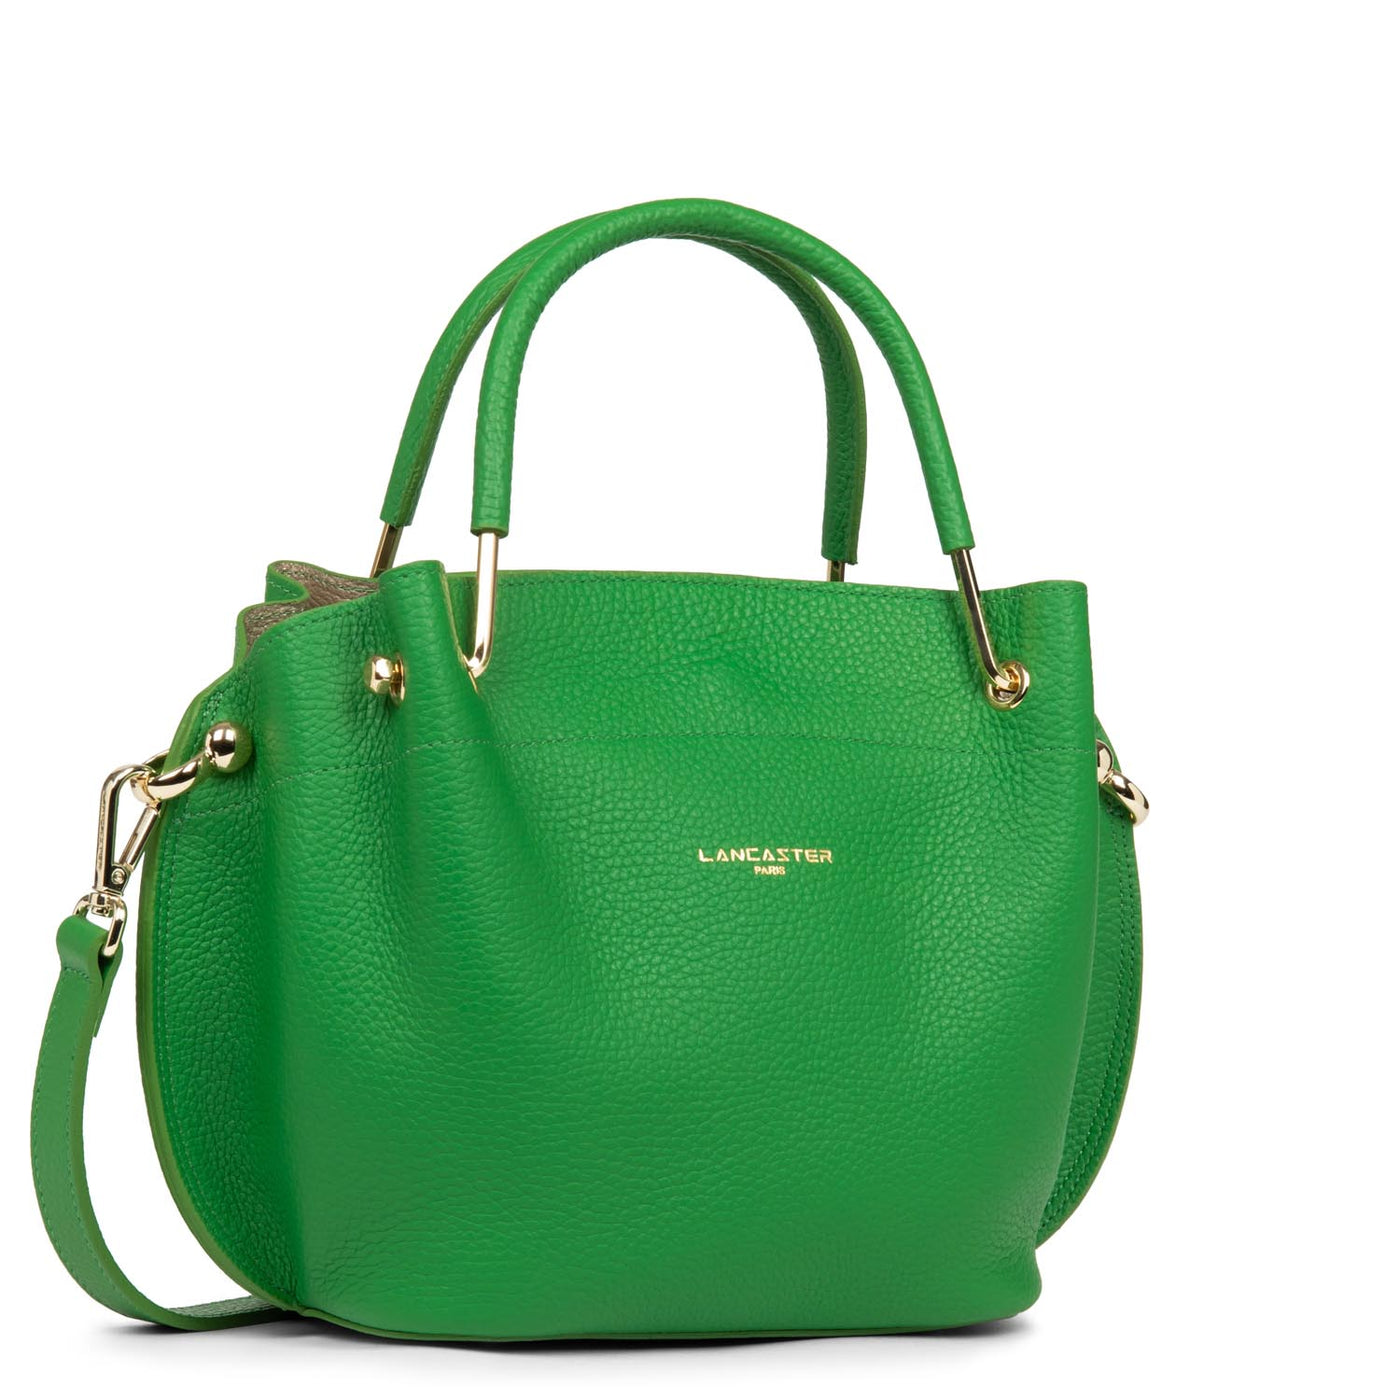 m handbag - foulonné double #couleur_gazon-in-champagne